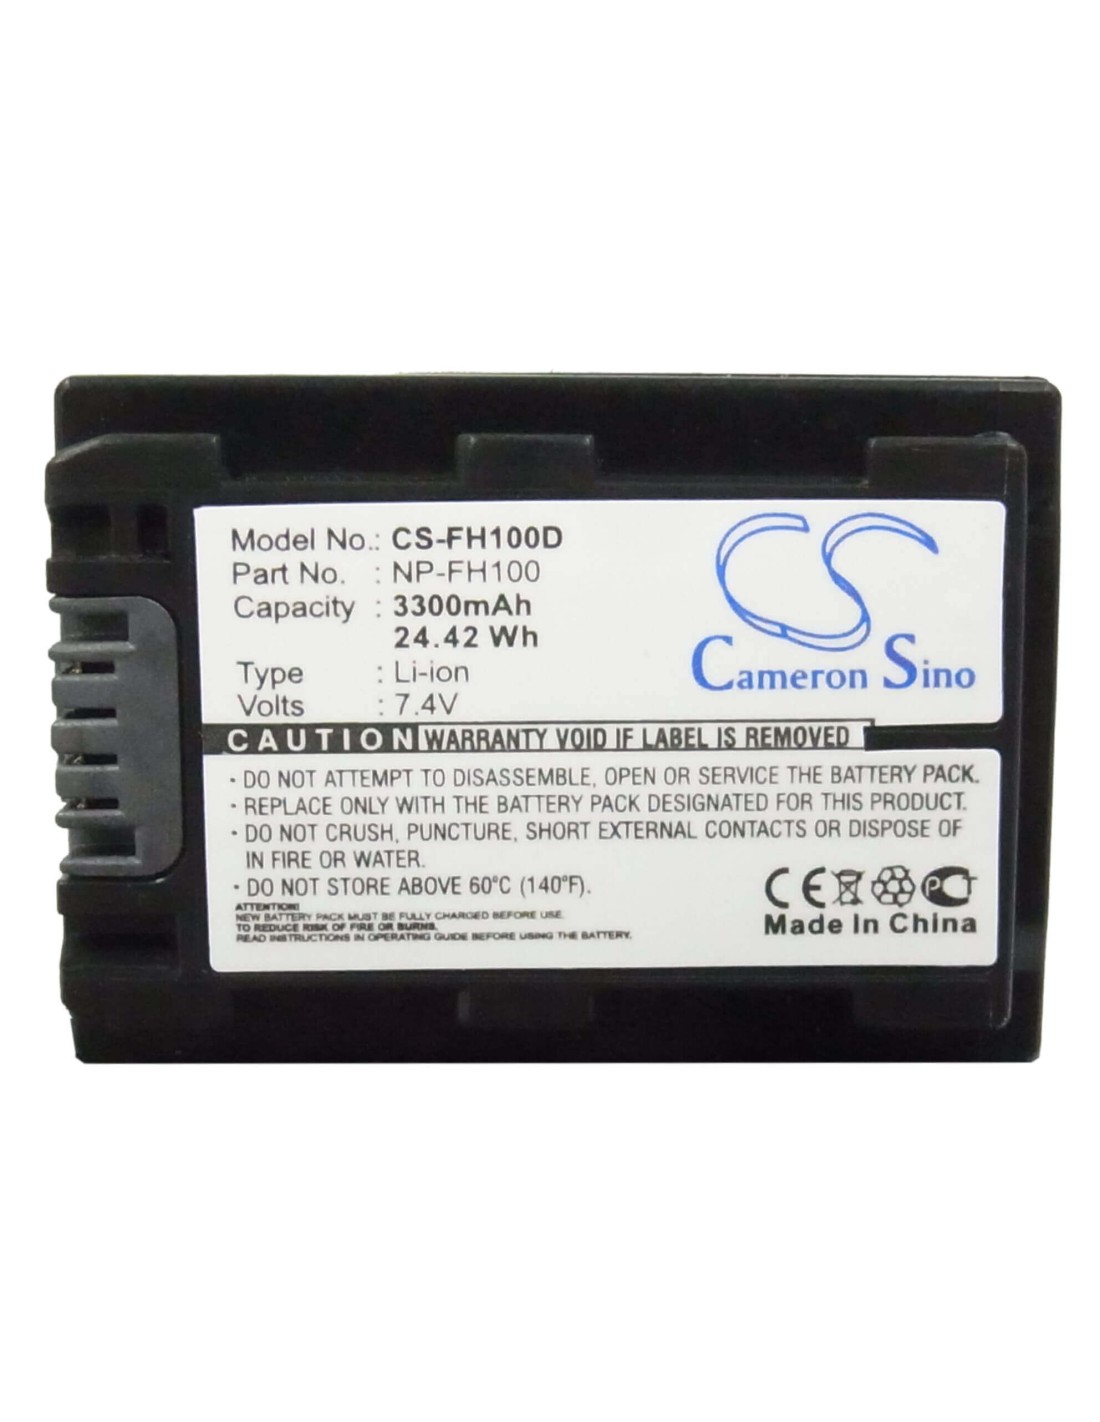 Battery for Sony Cr-hc51e, Dcr-30, Dcr-dvd103, Dcr-dvd105, 7.4V, 3300mAh - 24.42Wh